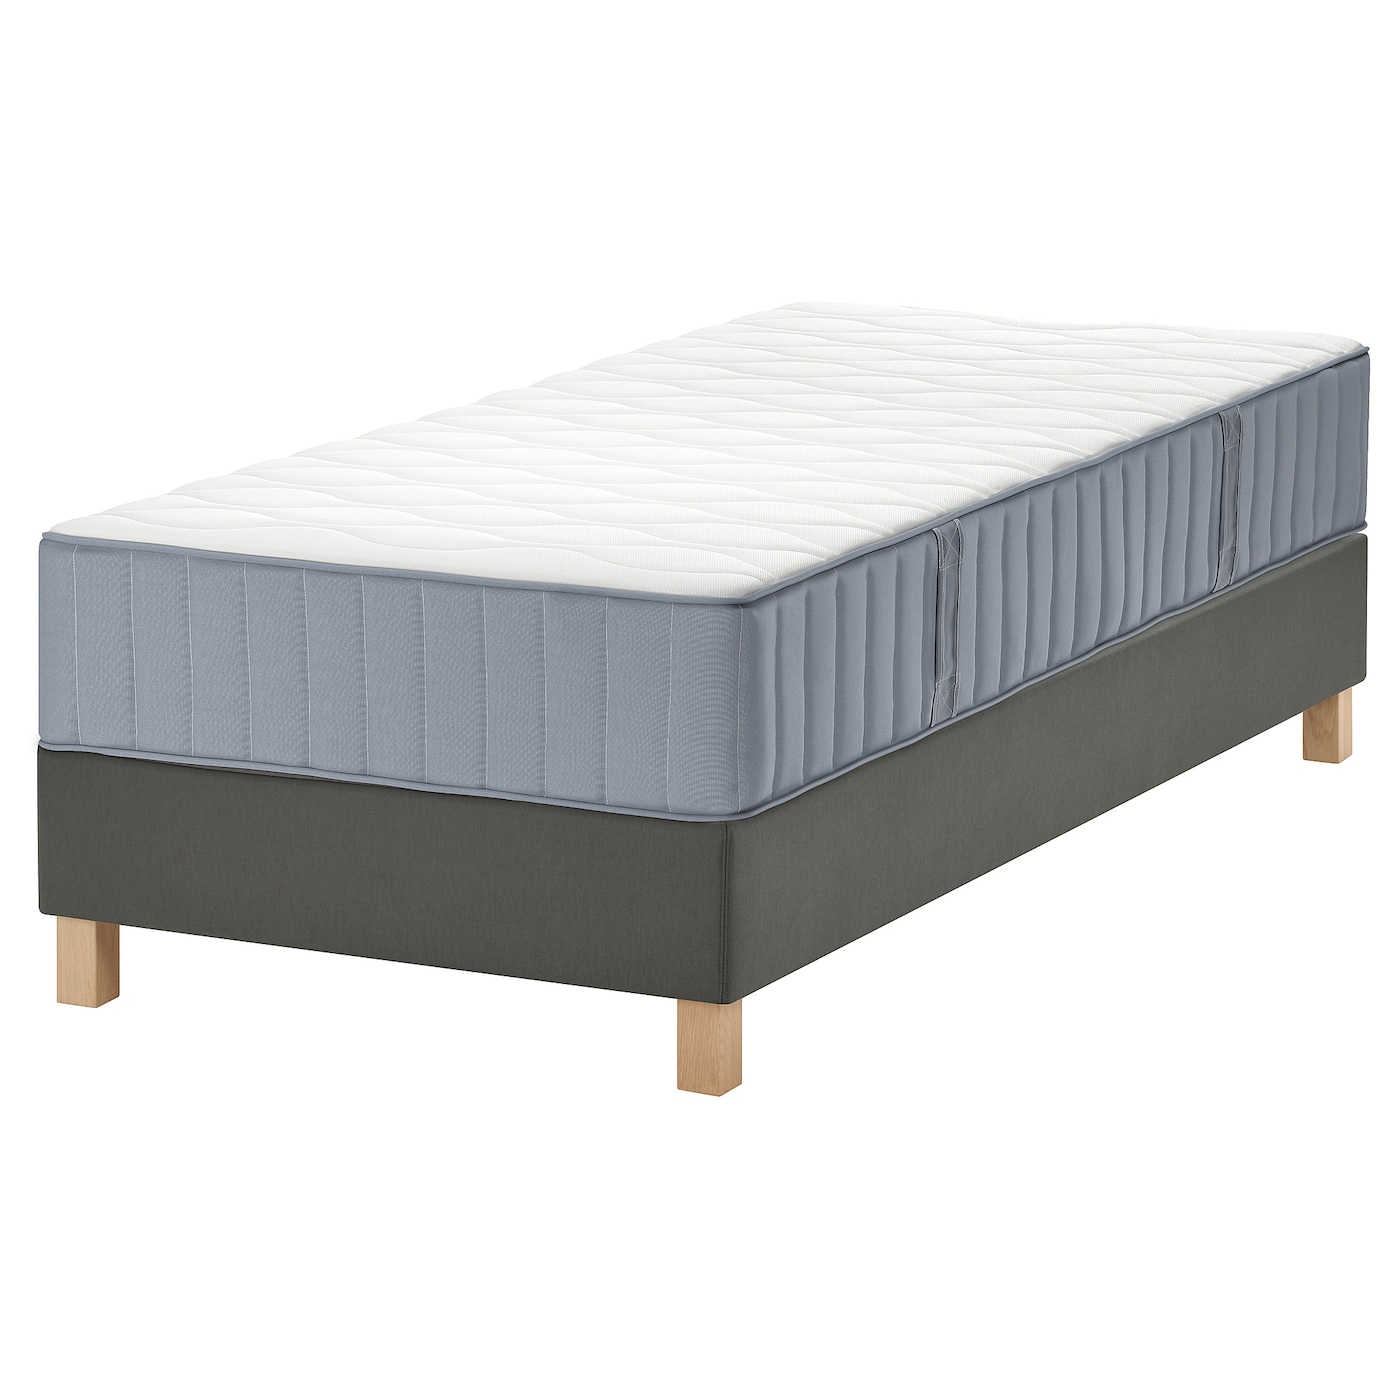 Кровать - LYNGÖR / LYNGОR IKEA/ ЛЮНГЕРЬ ИКЕА,  90х200 см,  серый